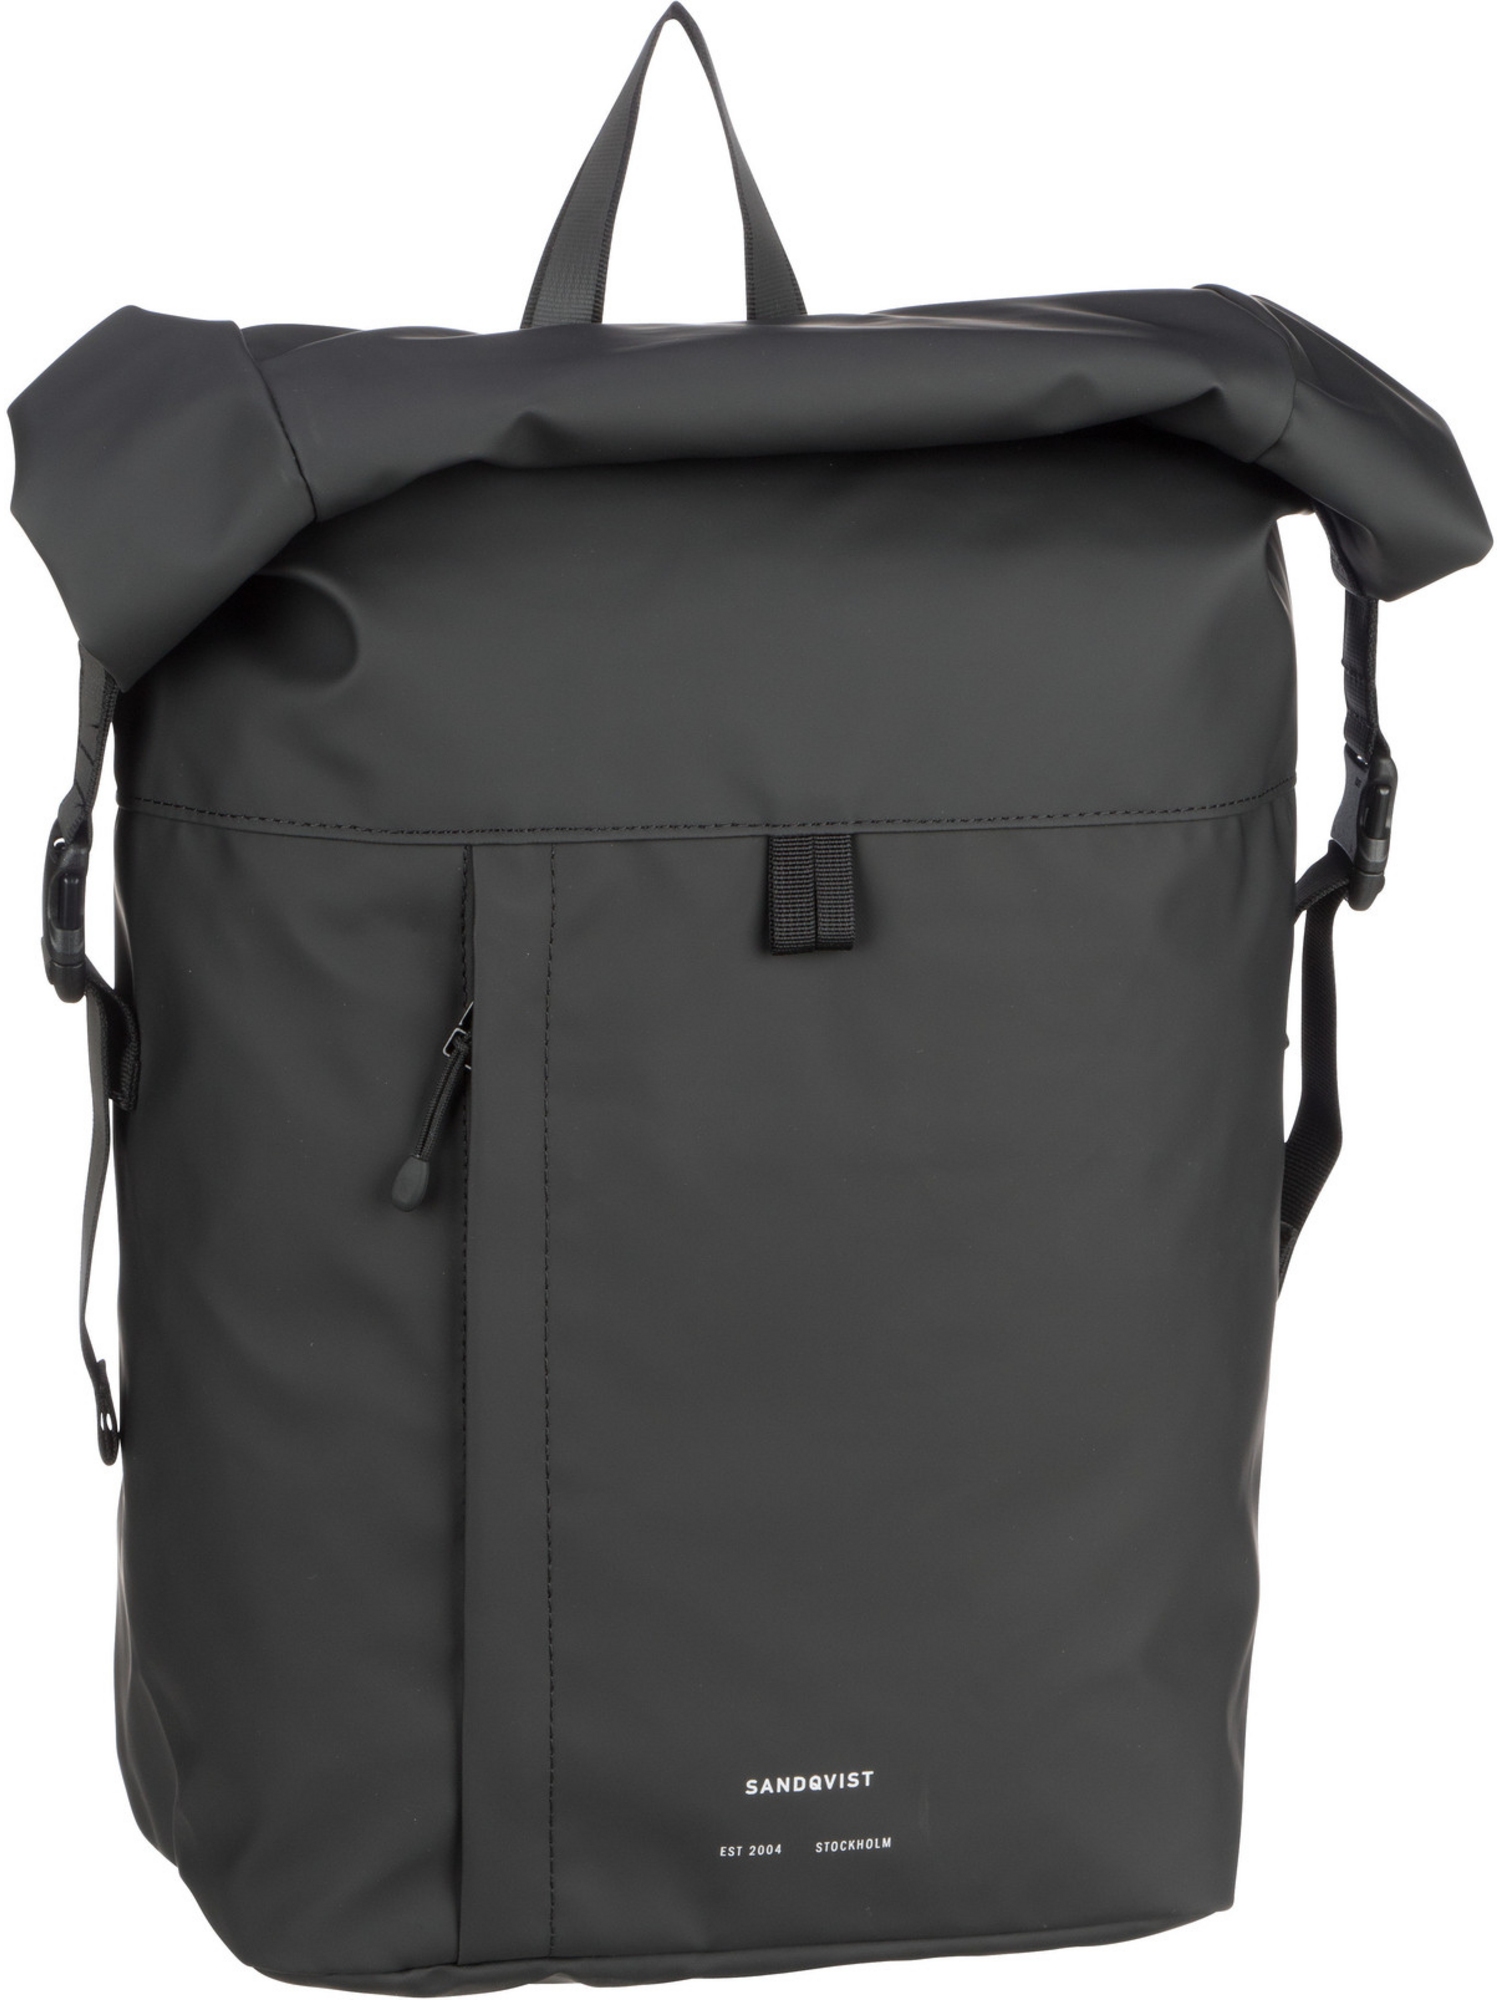 Рюкзак SANDQVIST/Backpack Konrad Backpack, черный рюкзак sandqvist konrad